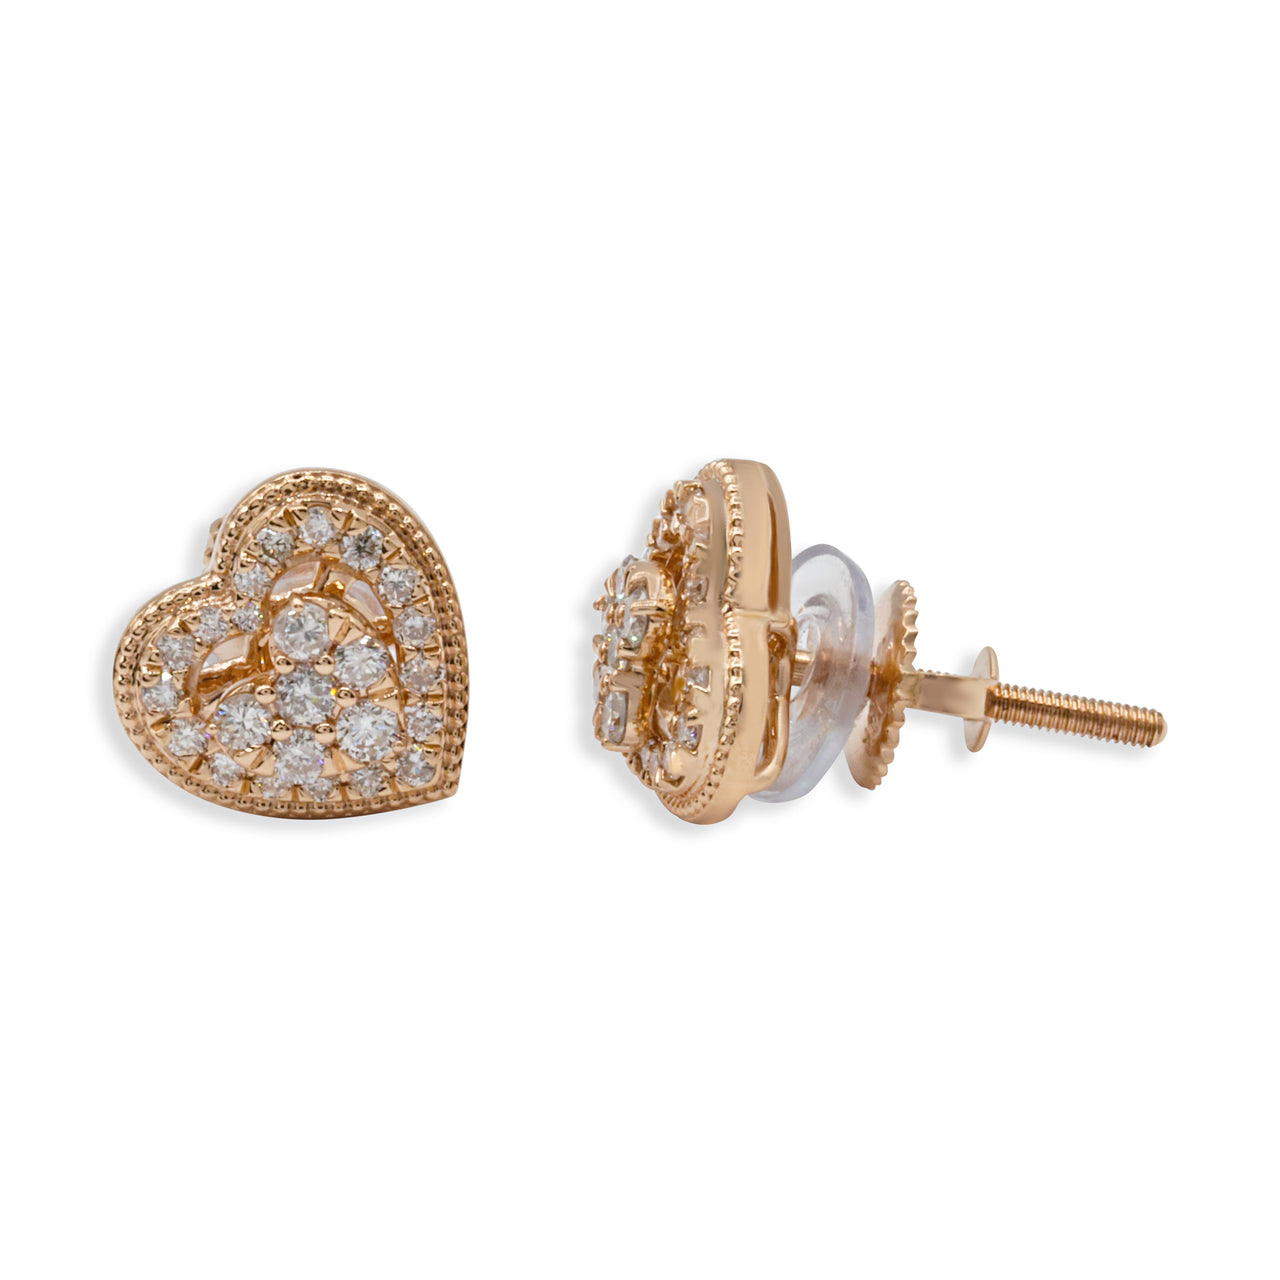 14k Yellow Gold Diamond Heart Shaped Stud Earrings 0.47 ctw